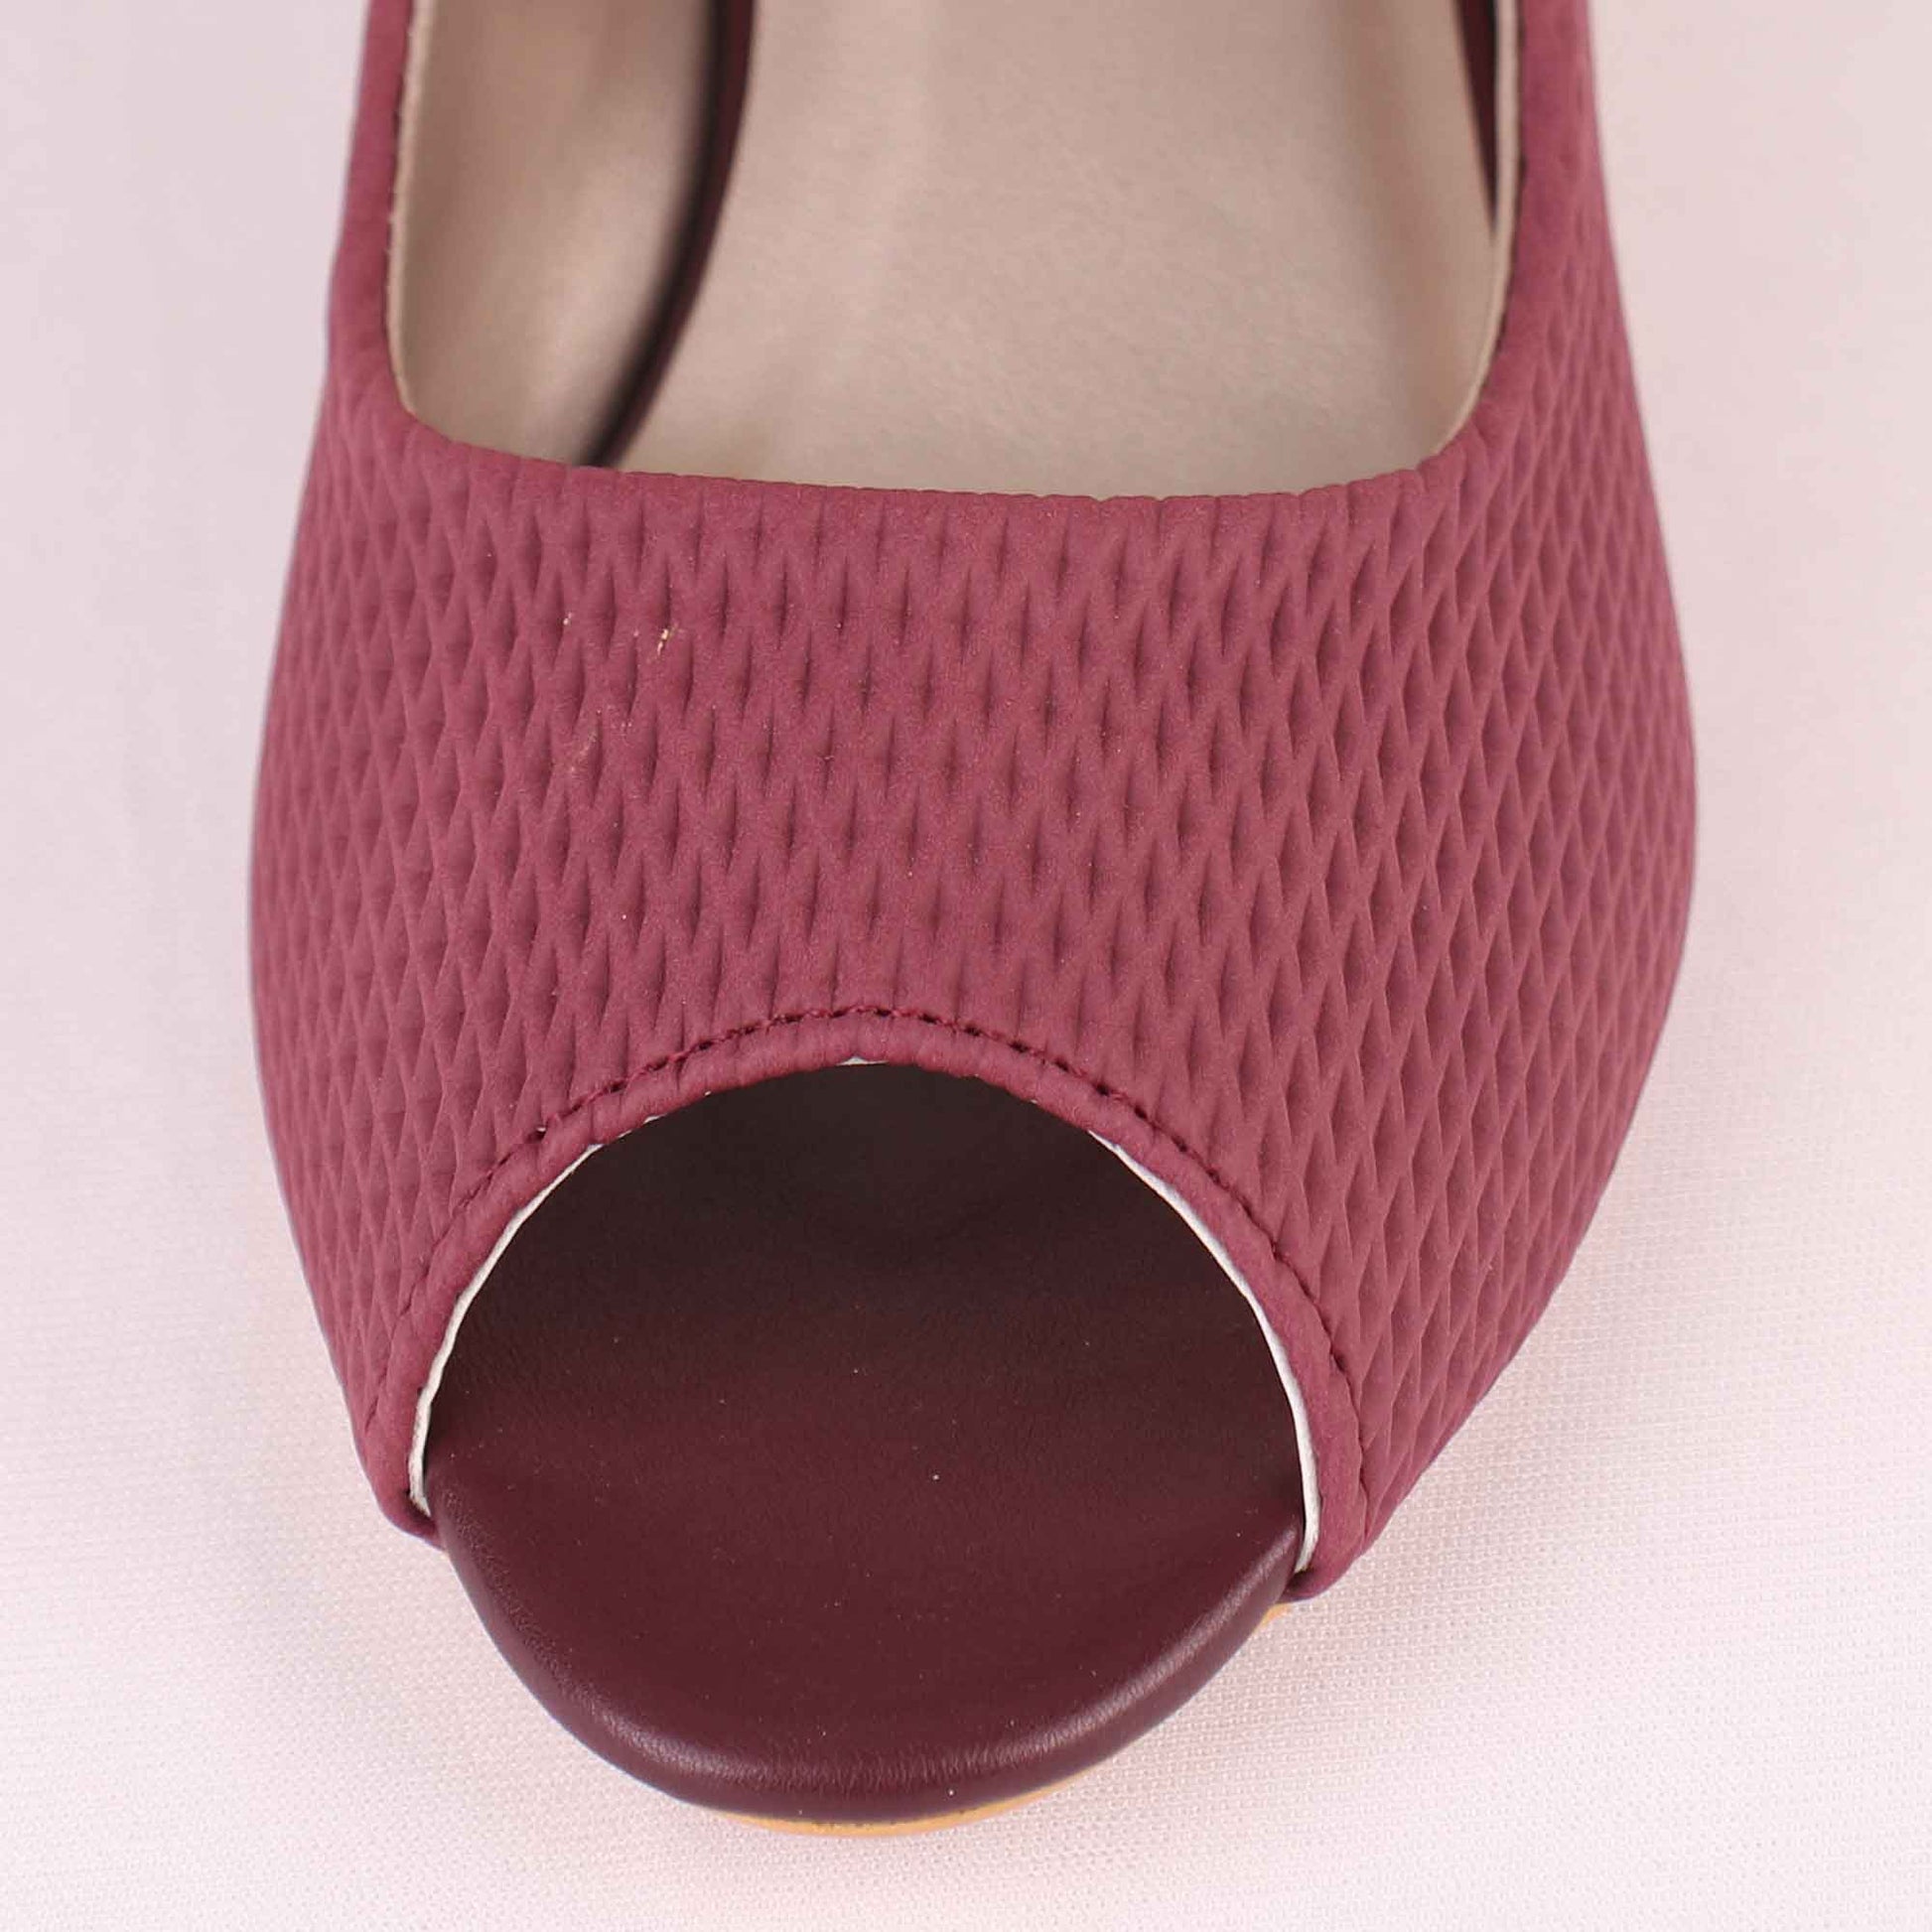 Foot Wear,The Shoemance Wine Block Heels - Cippele Multi Store